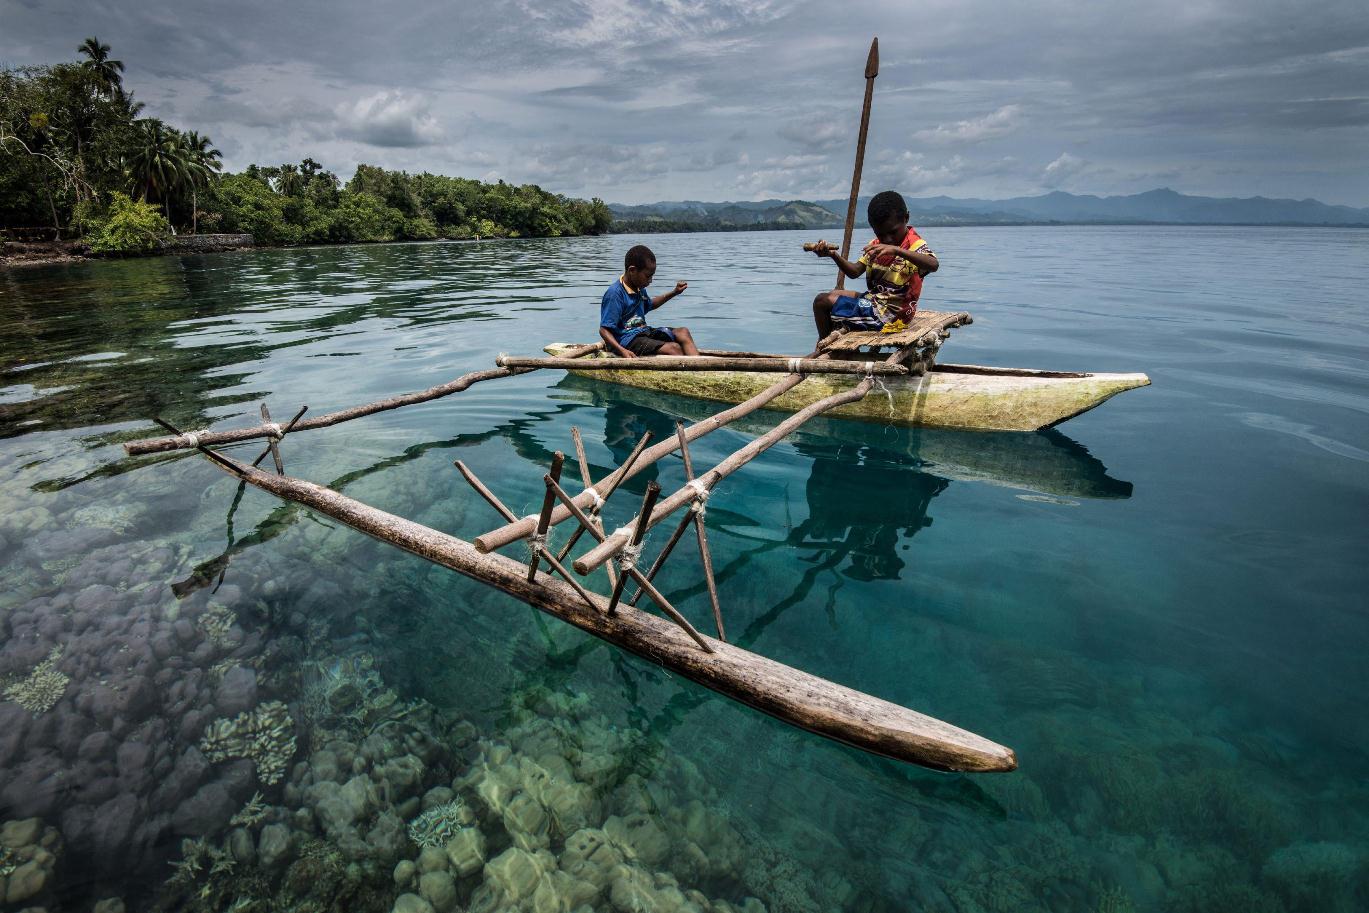 Рыболовство является одним из основных традиционных промыслов местных папуасов. Они обучаются ловить рыбу с очень юного возраста.